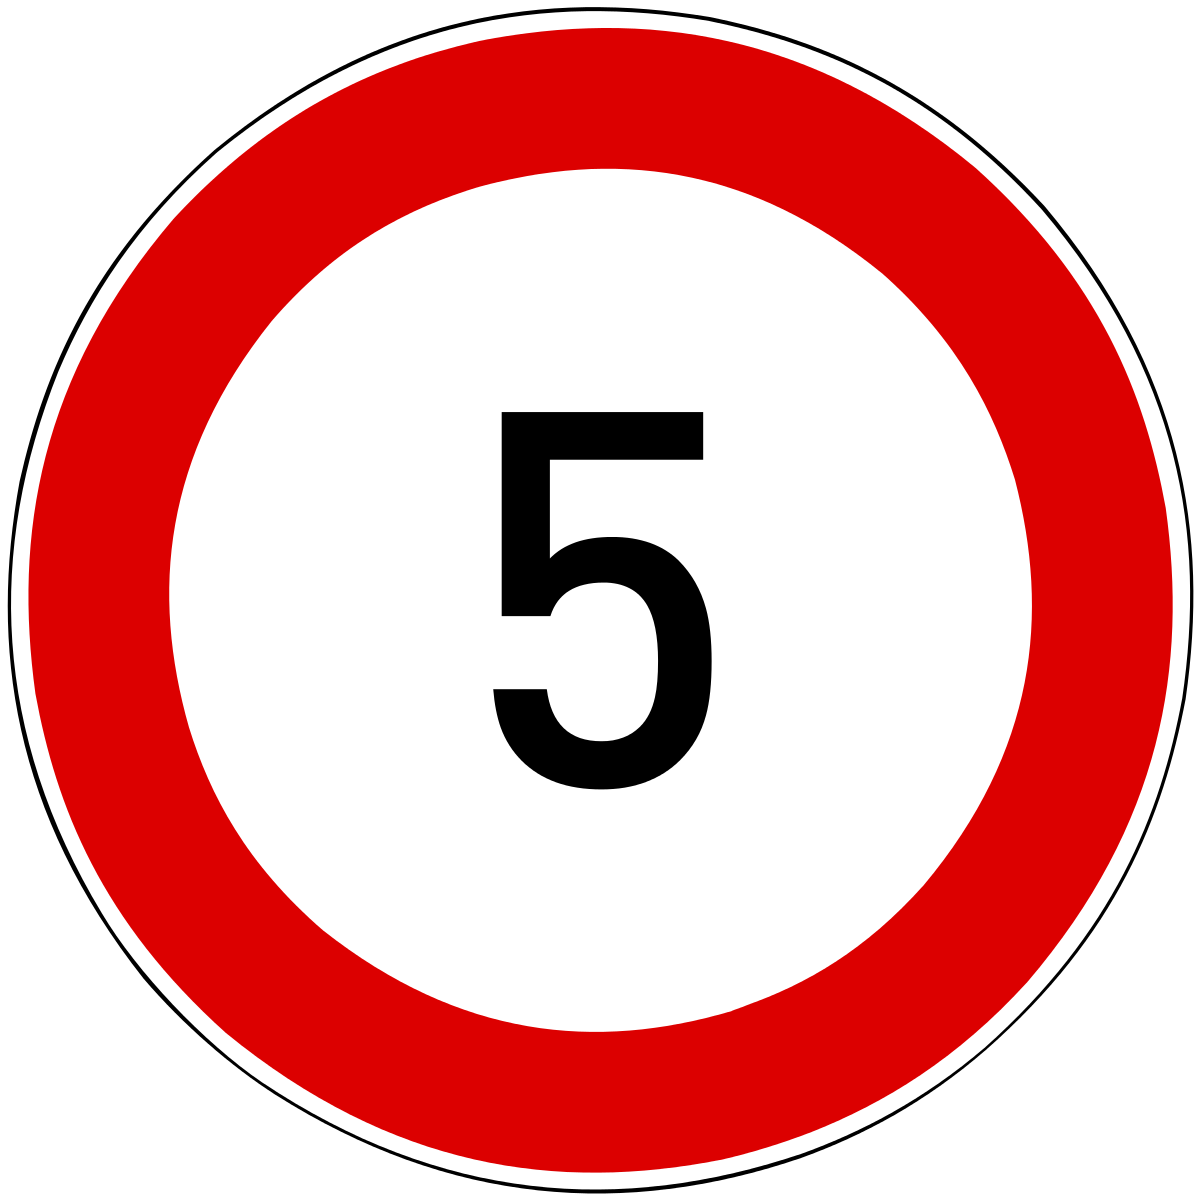 Пятерка в круге. Знак скорость 5 км/ч. Дорожные знаки ограничение скорости 5. Ограничение скорости 5 км дорожный знак. Дорожные знаки круглые.